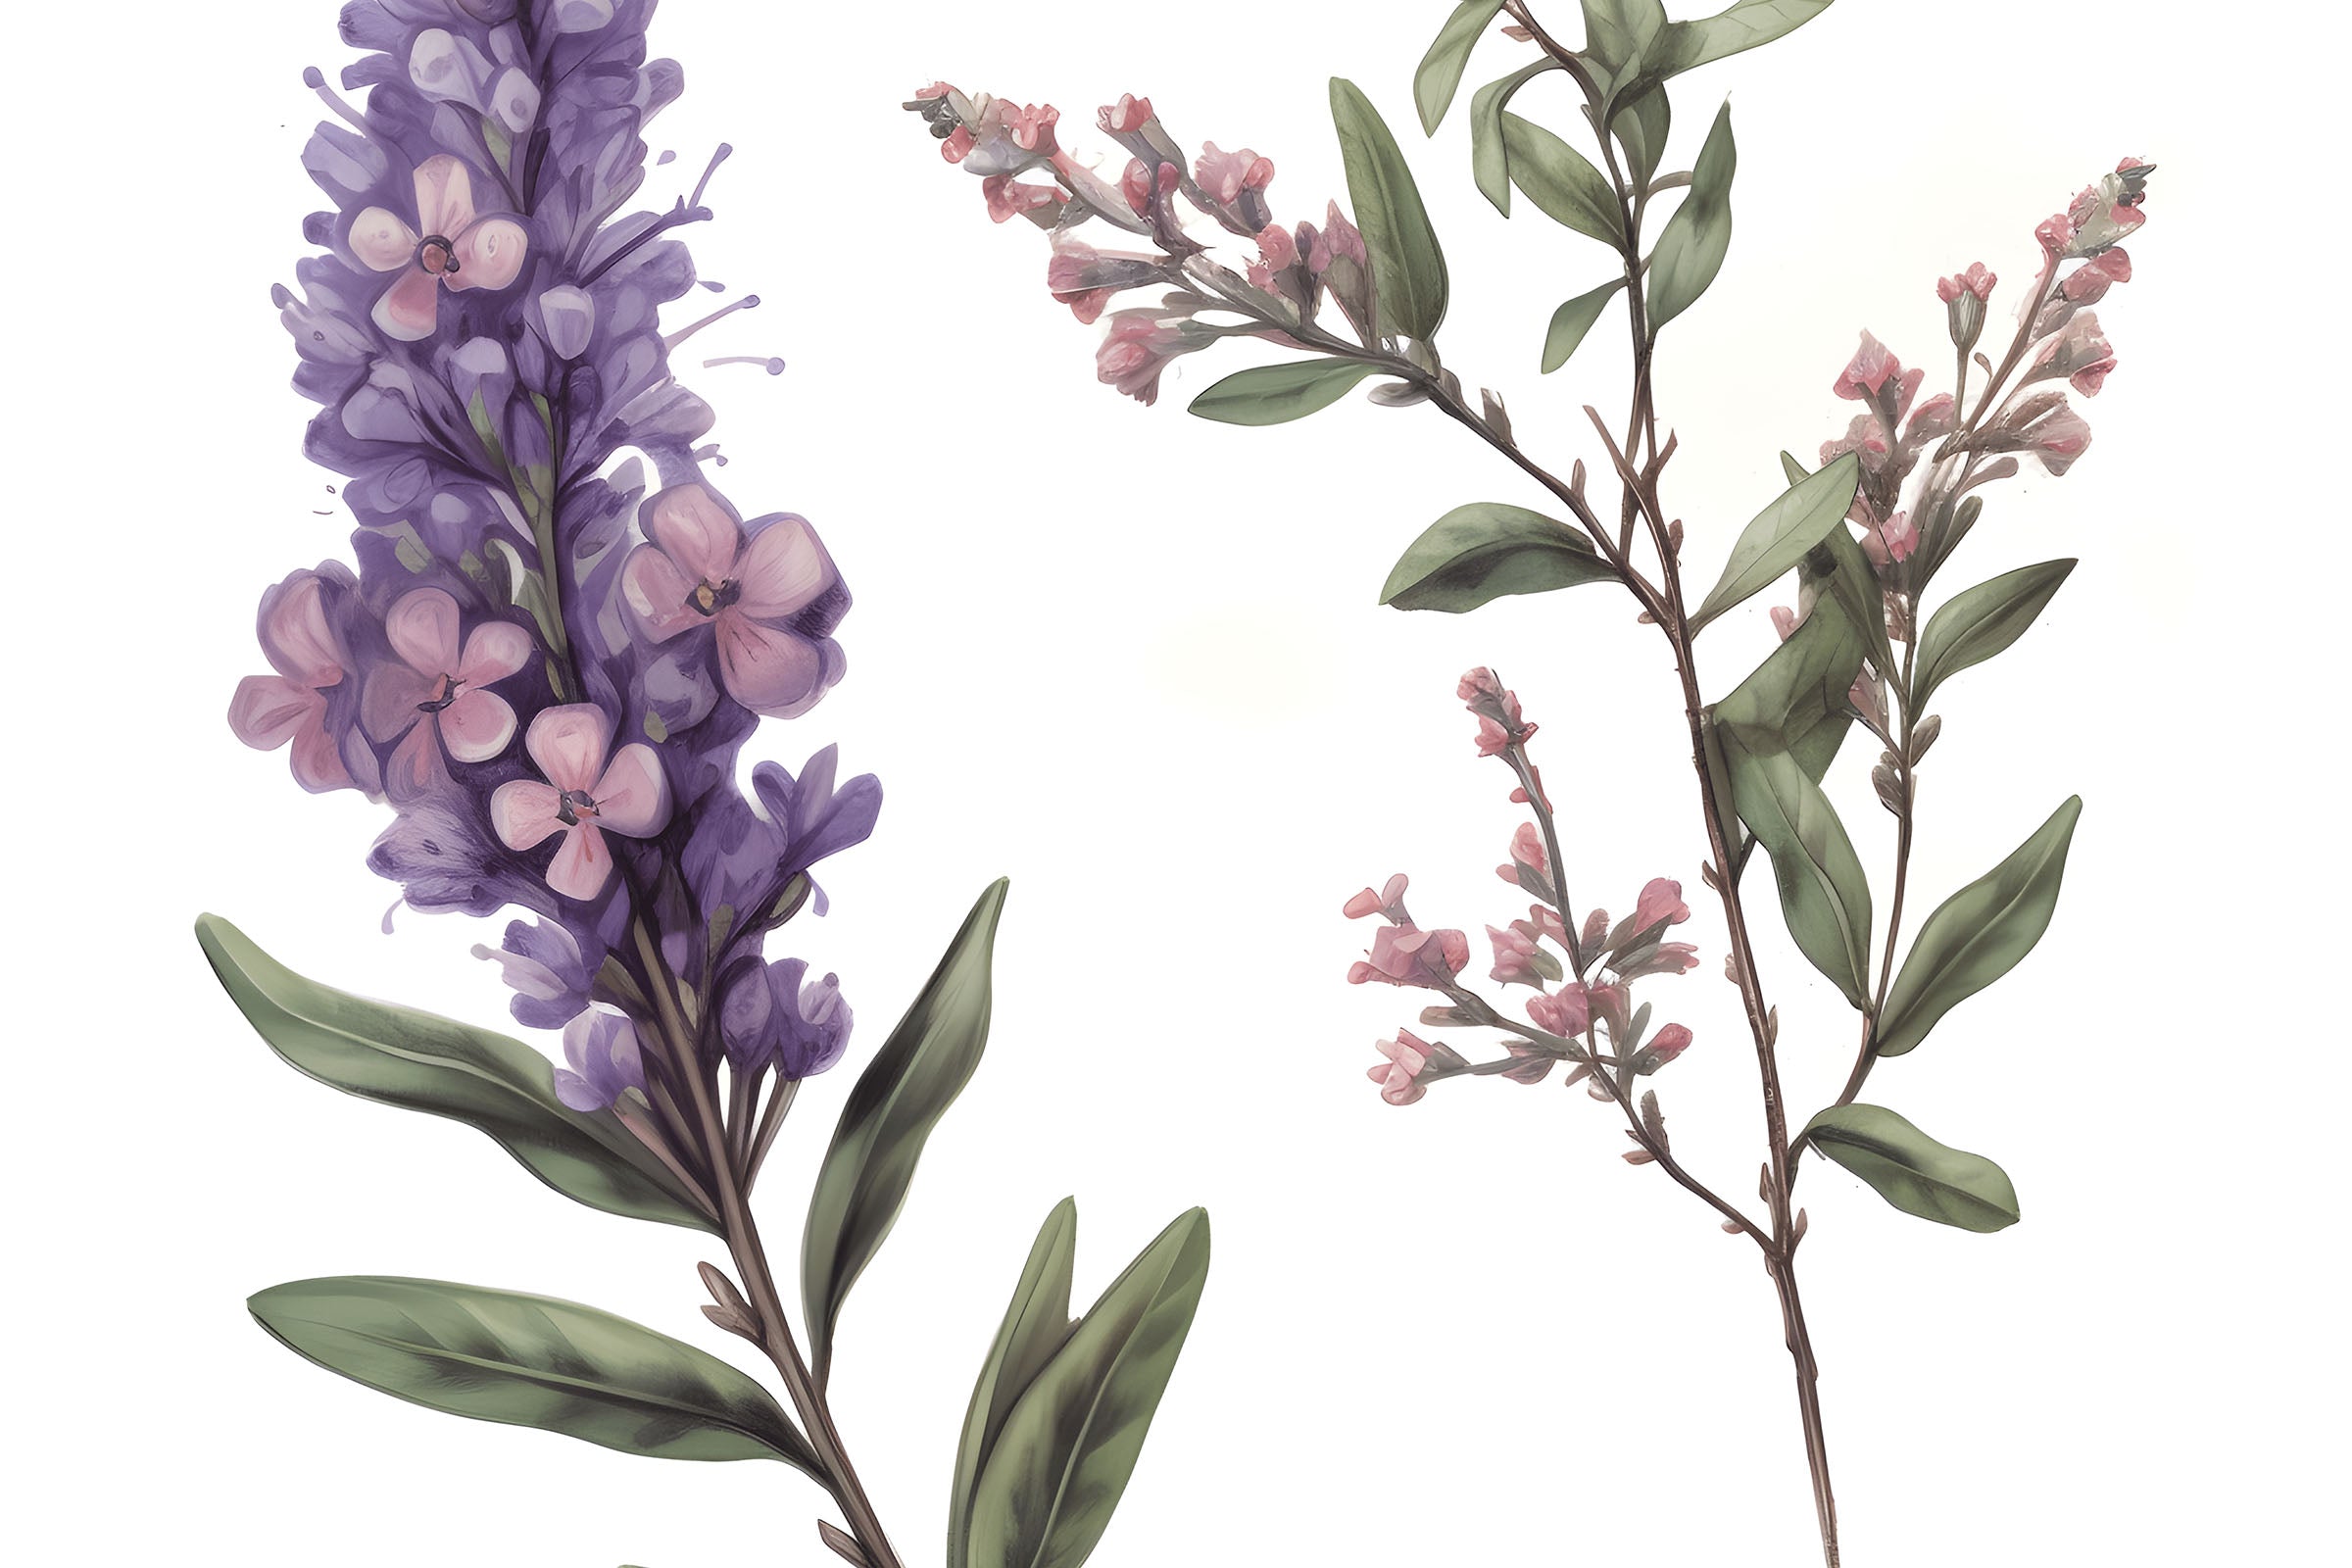 Lavender Tea Tree Essential Oil